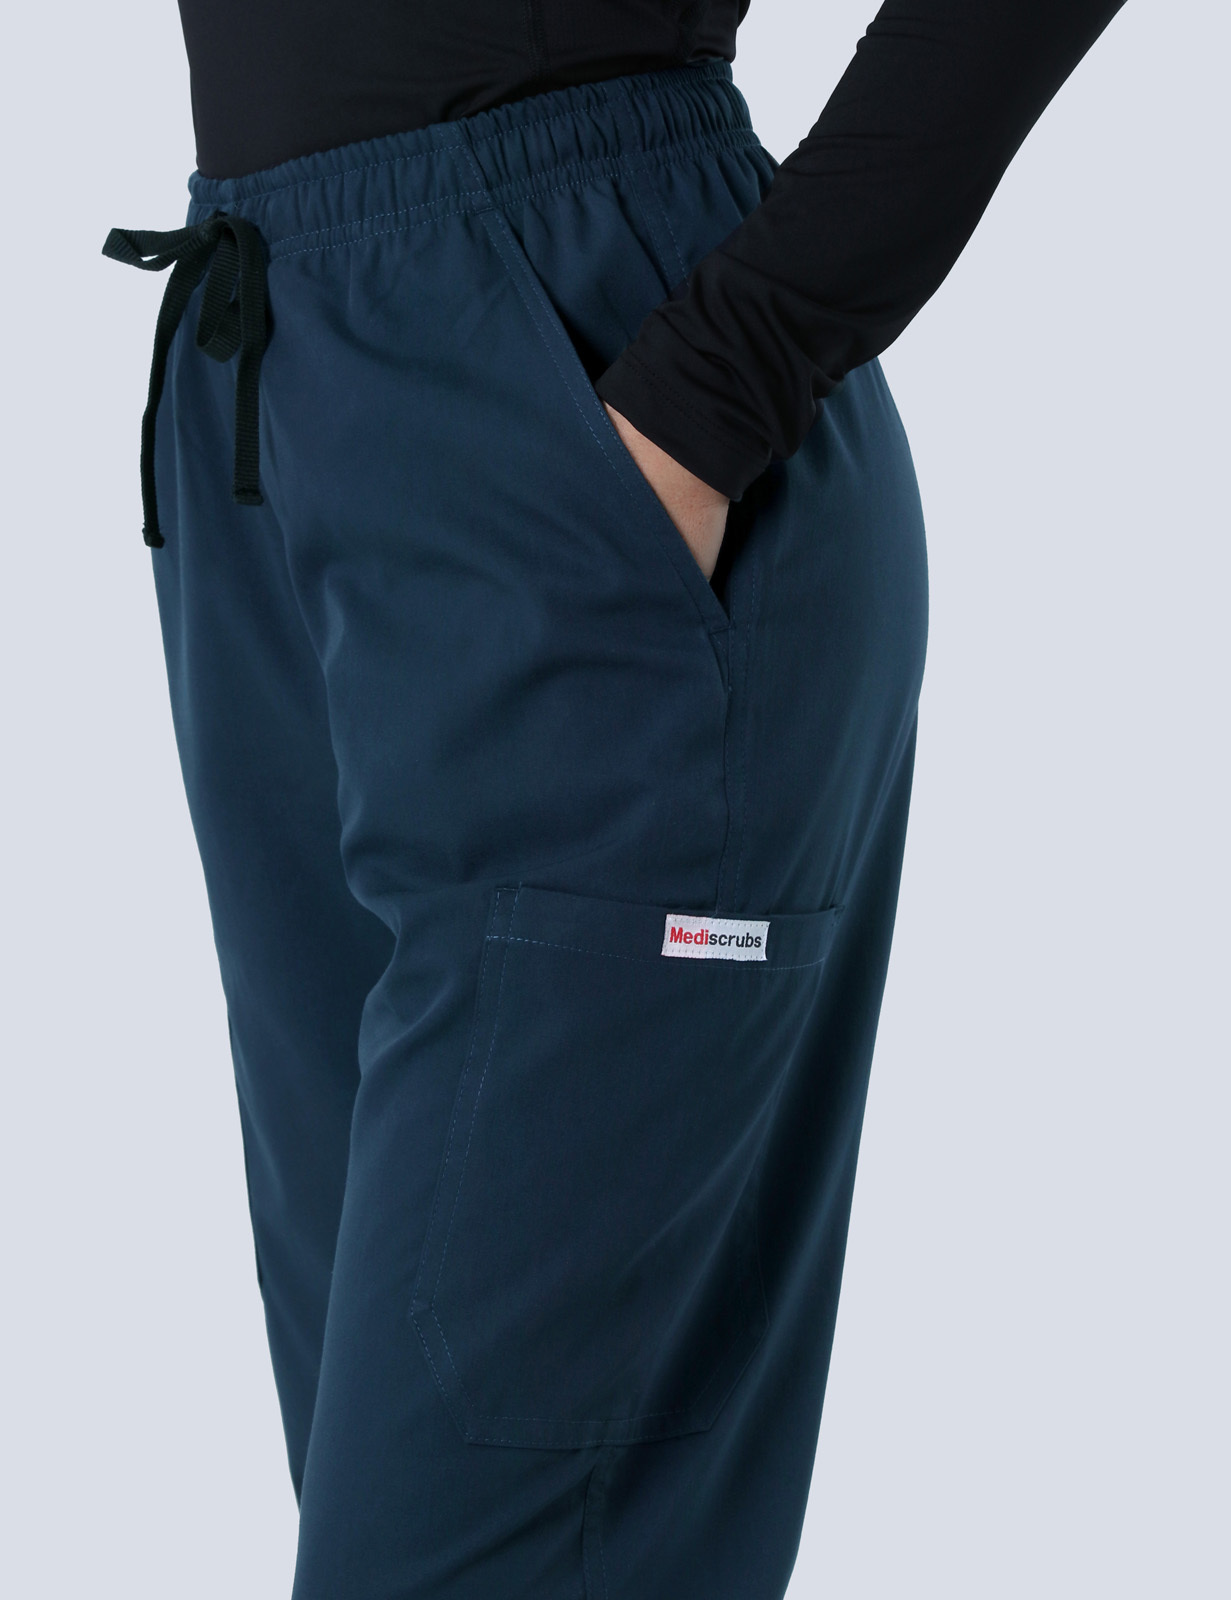 republic HUNTER cargo pants XLサイズ - ワークパンツ/カーゴパンツ